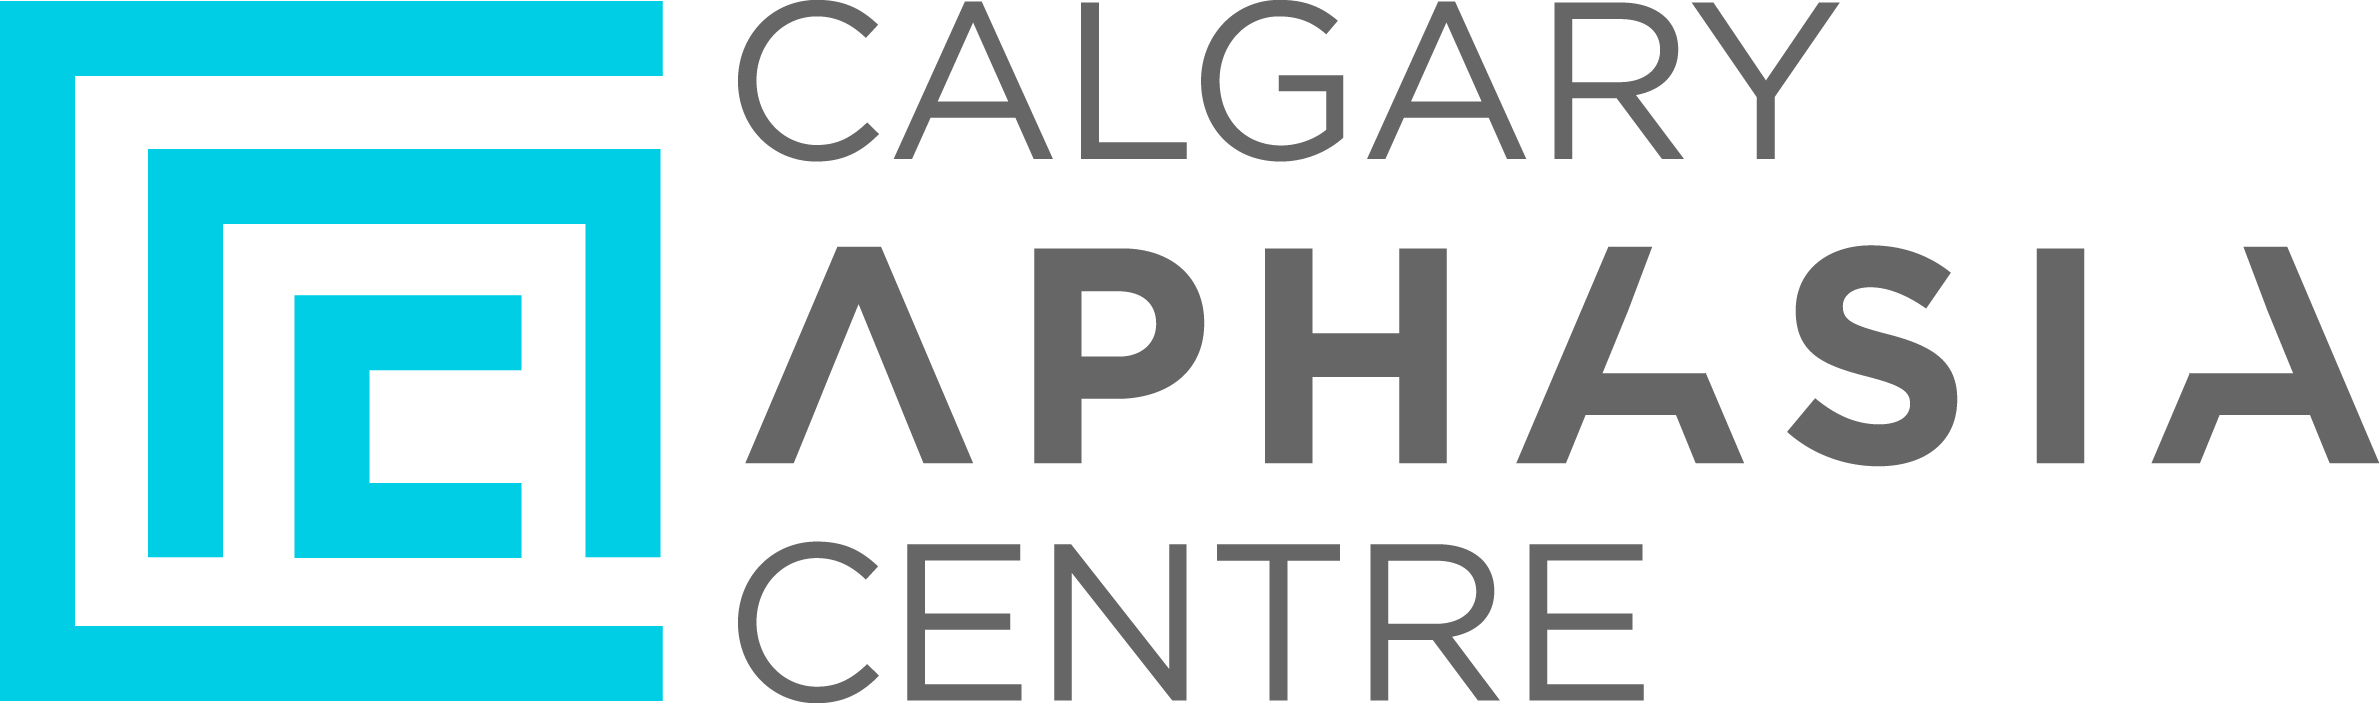 Stroke Recovery Association of Calgary logo